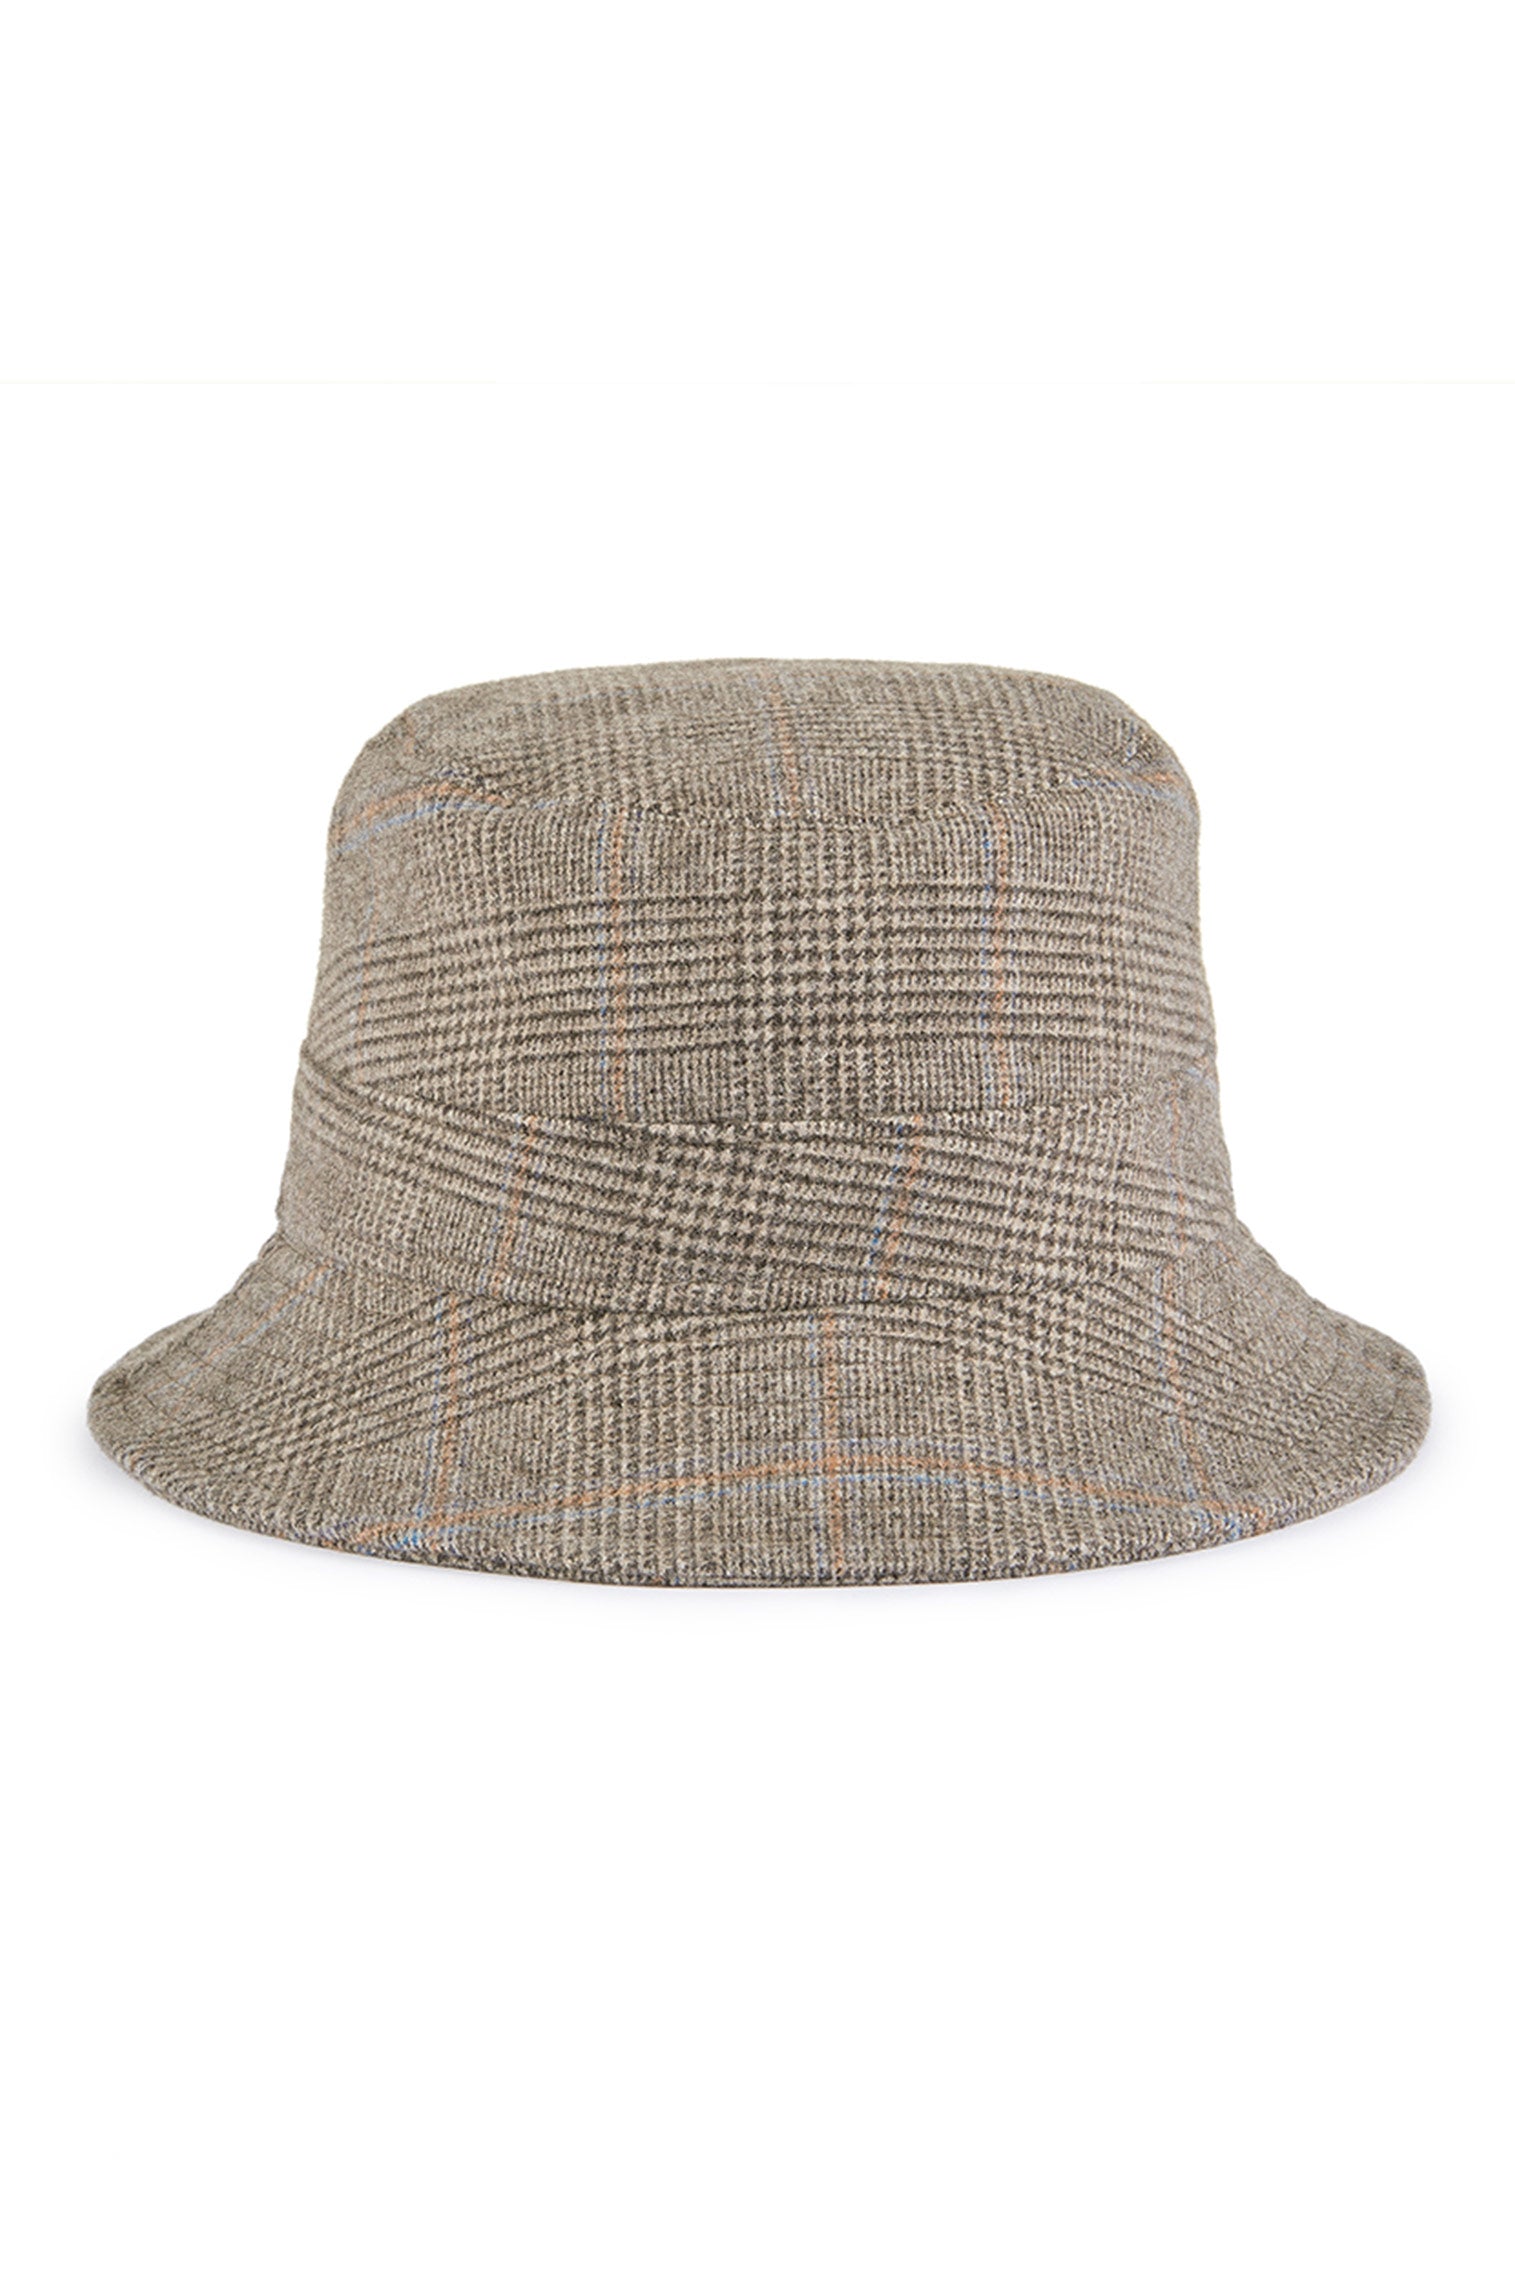 Escorial Wool Bucket Hat - Escorial Wool Hats - Lock & Co. Hatters London UK